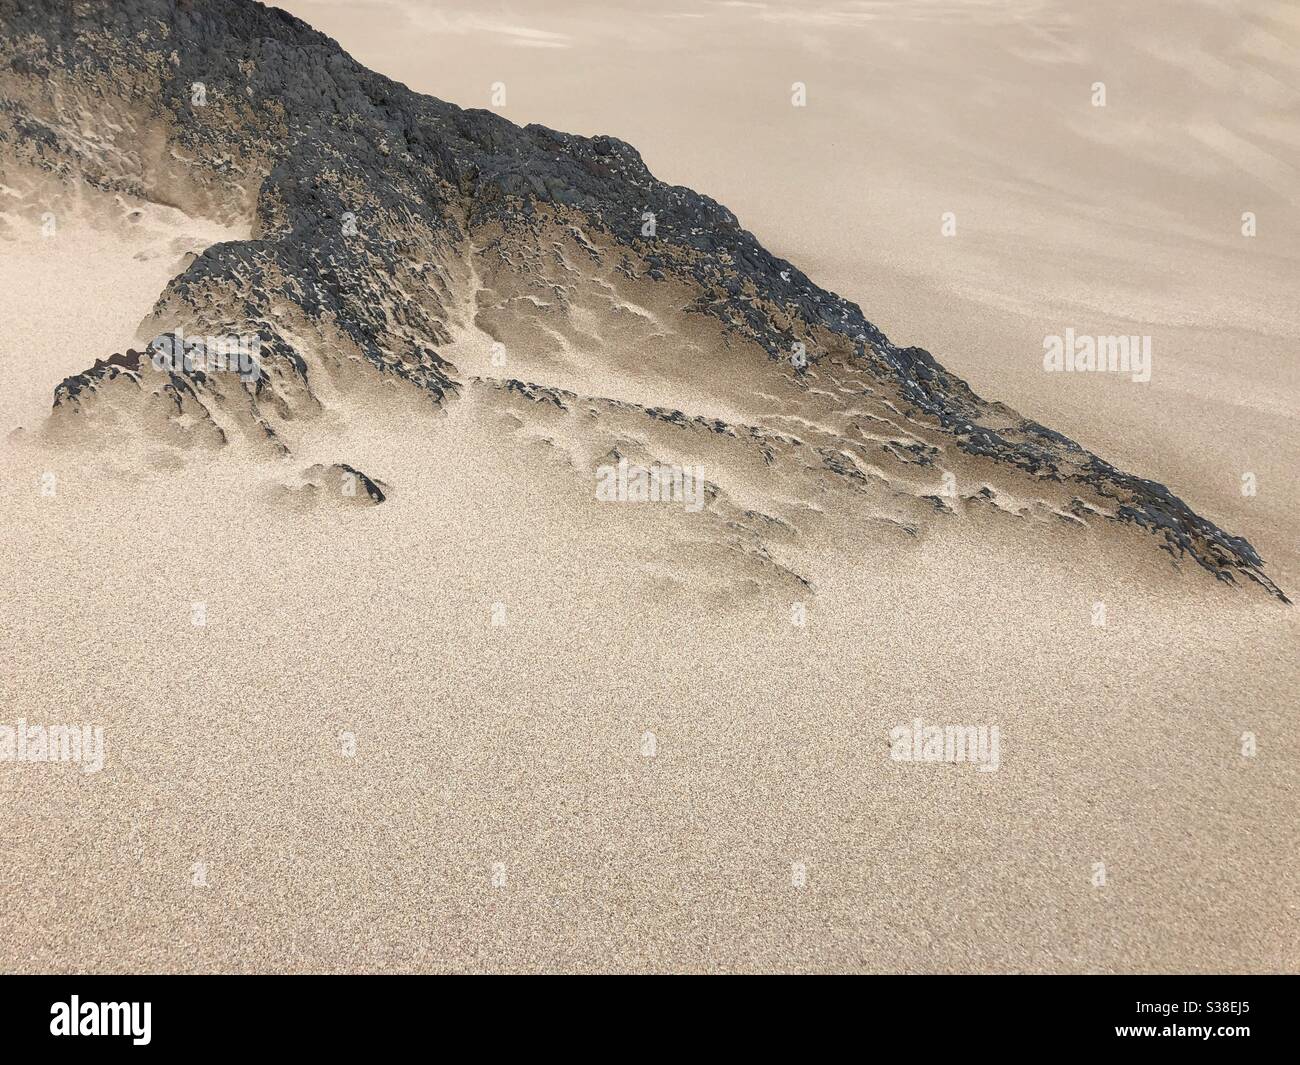 Wind blown sand on rocks Stock Photo